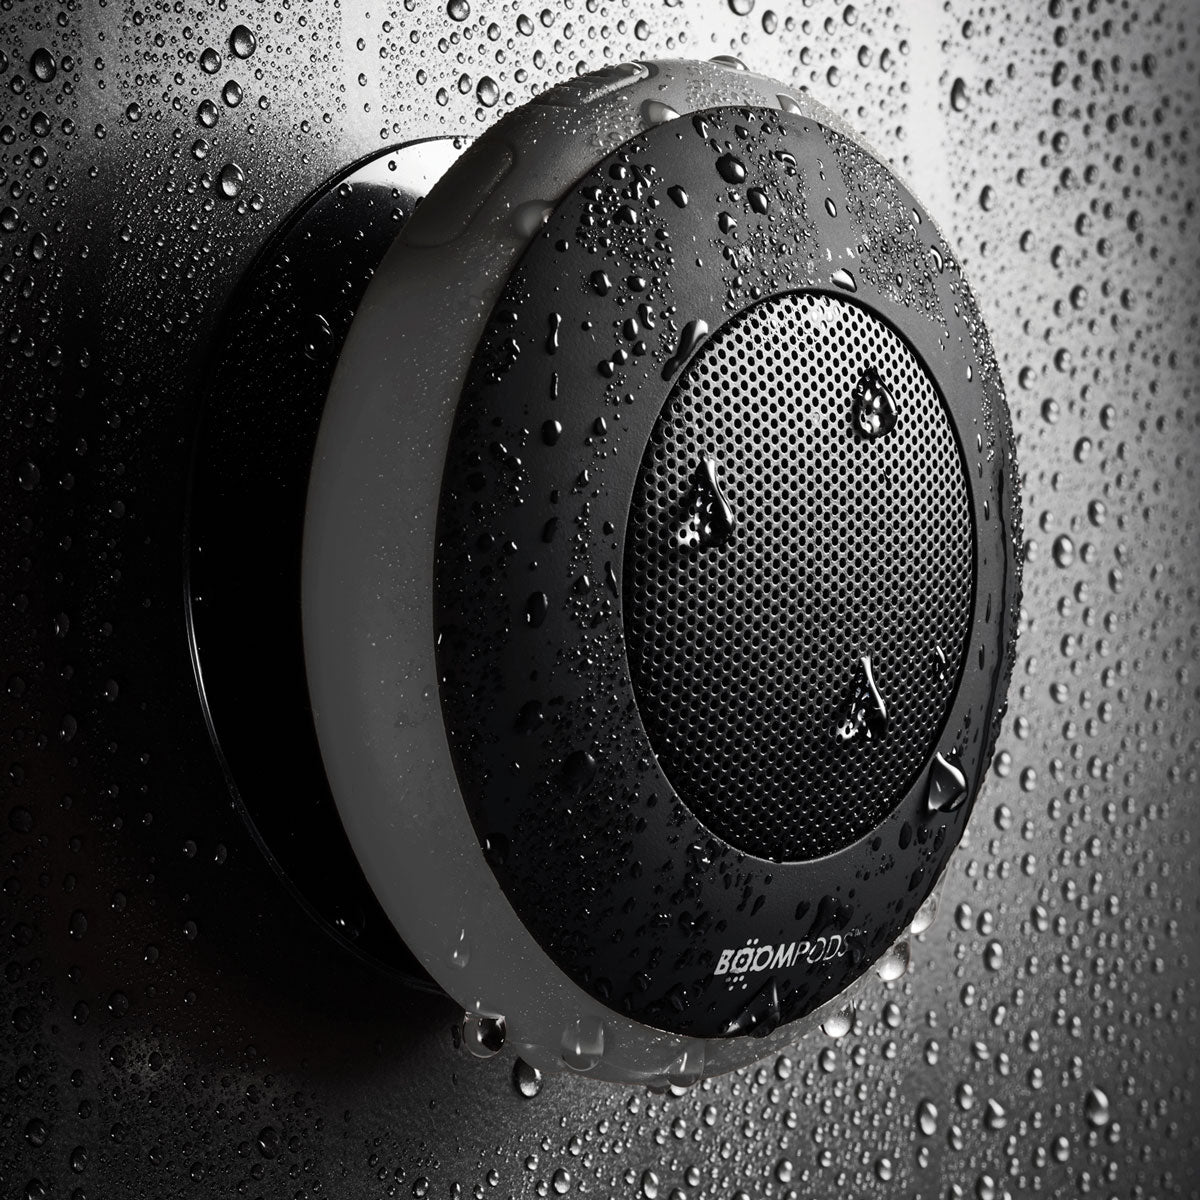 Aquapod Wireless Speaker - Dark Grey